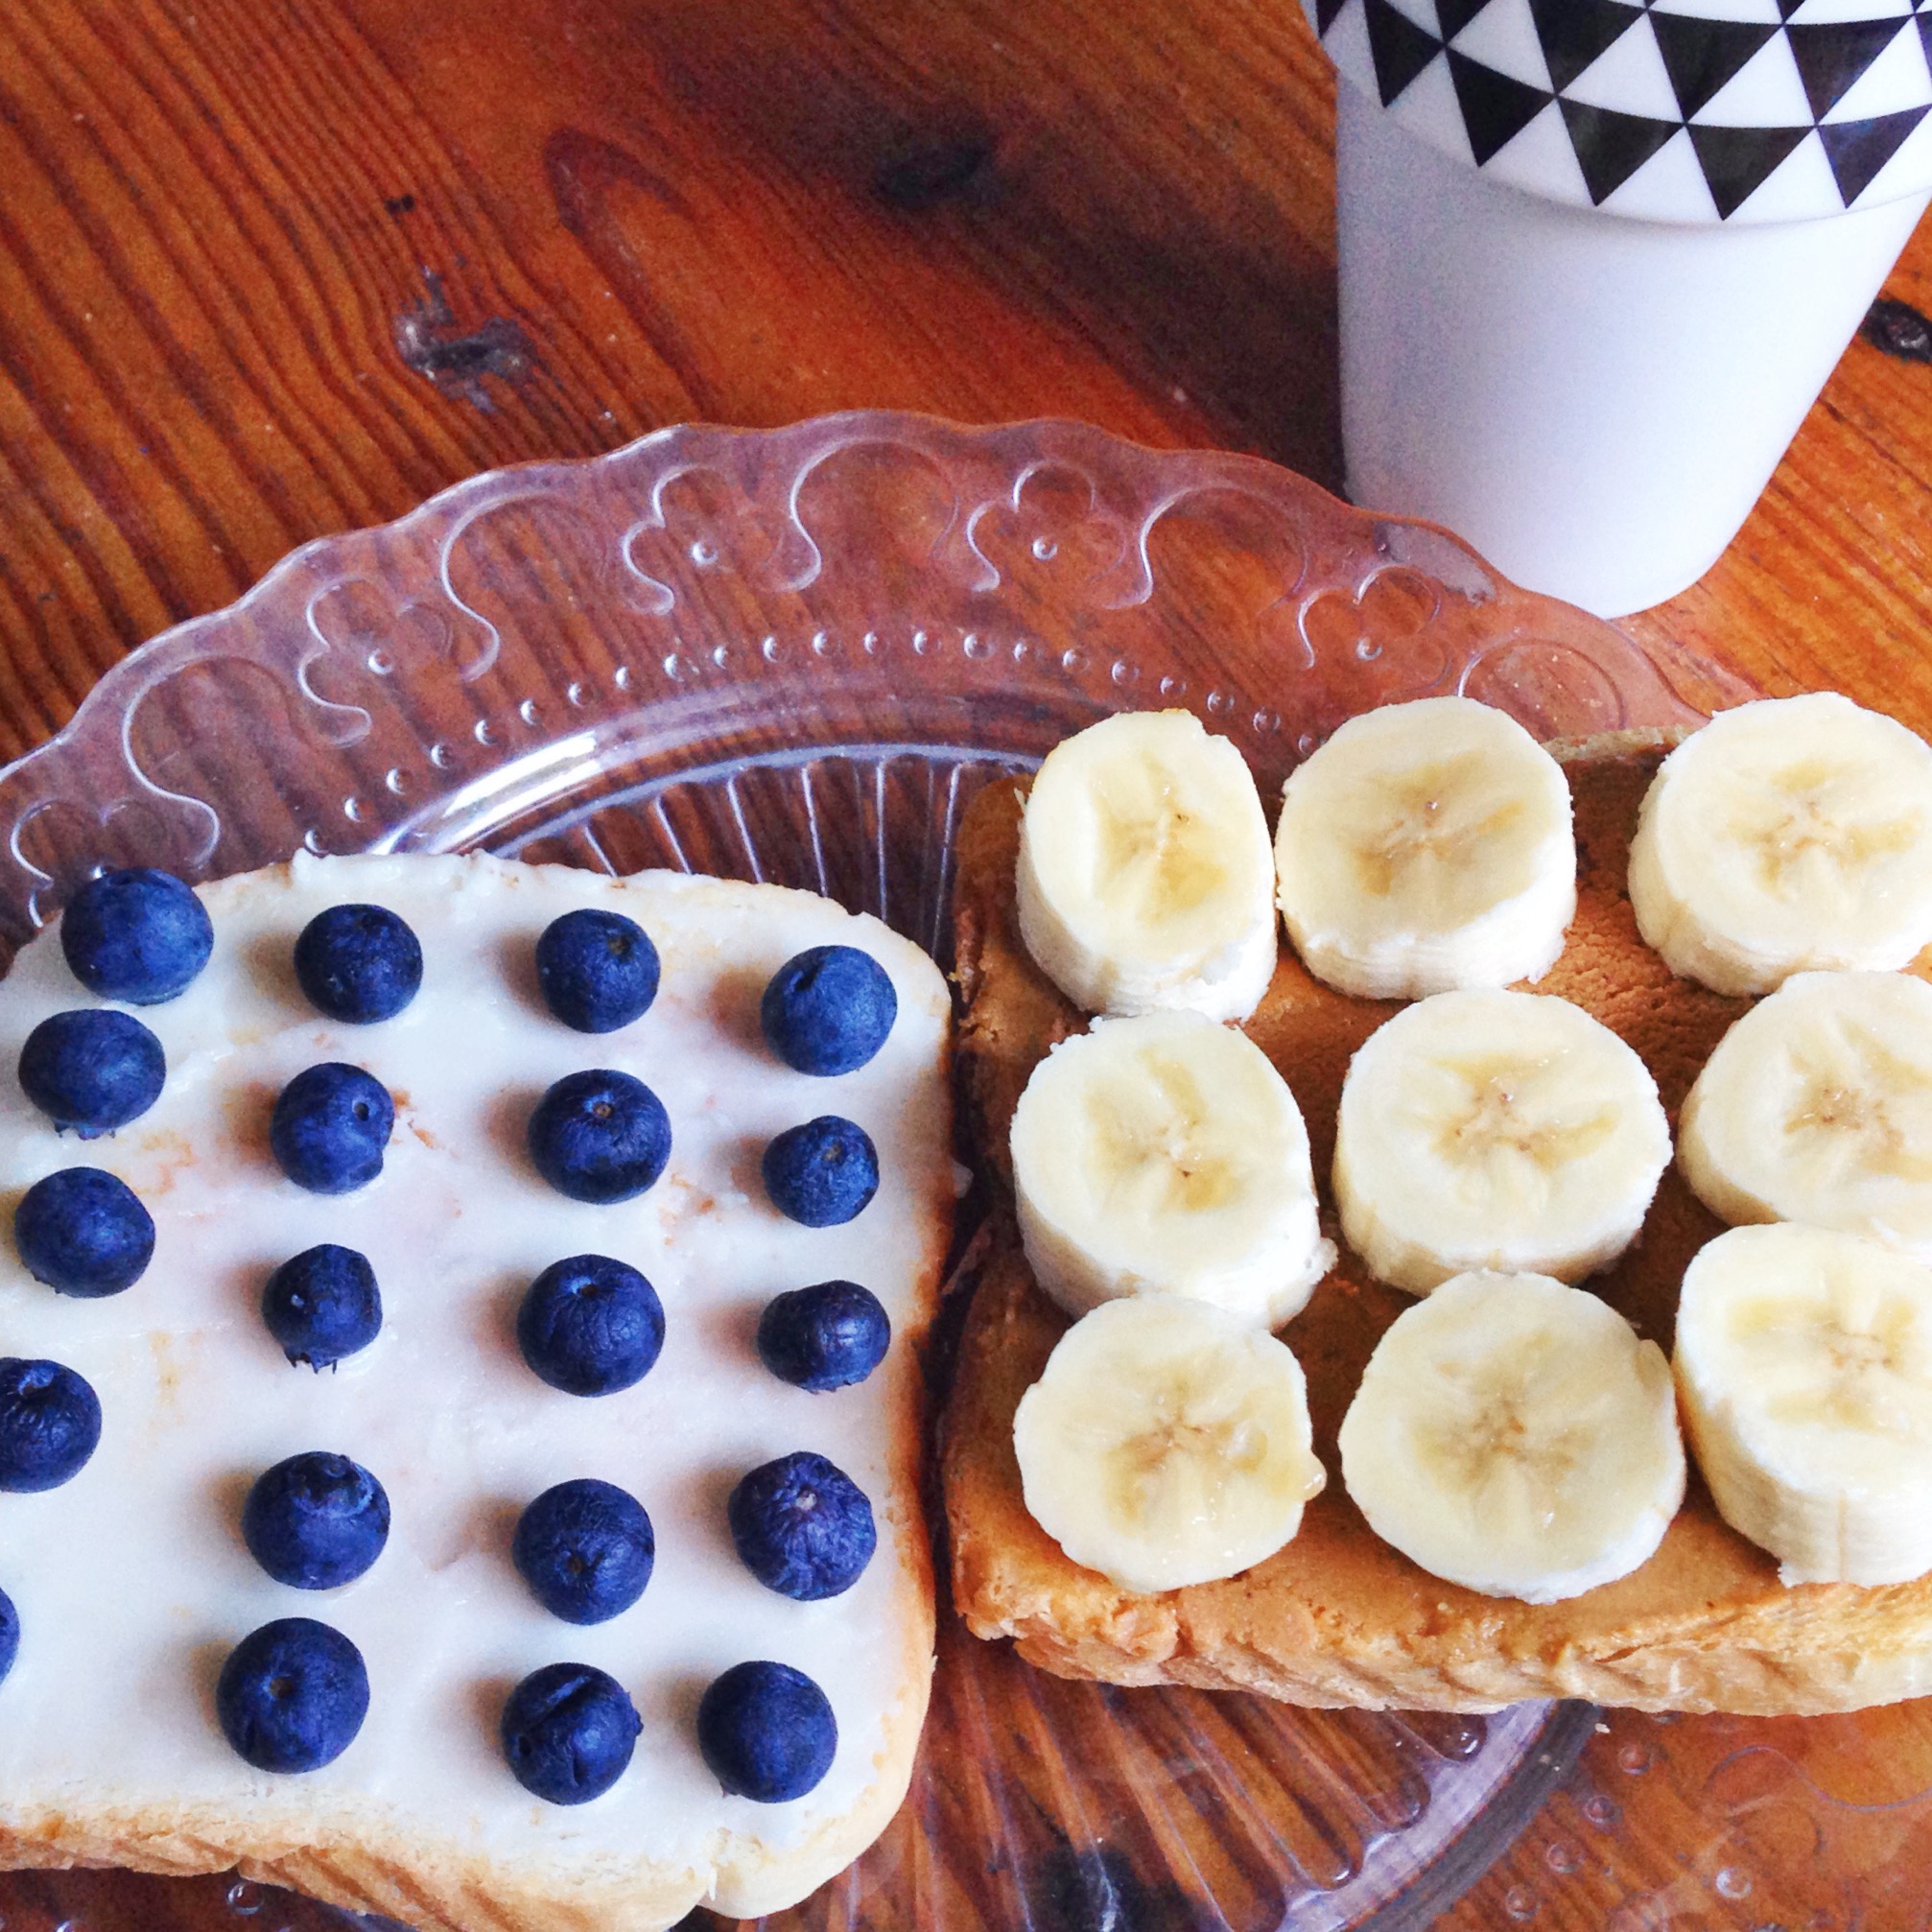 Healthy breakfast ideas